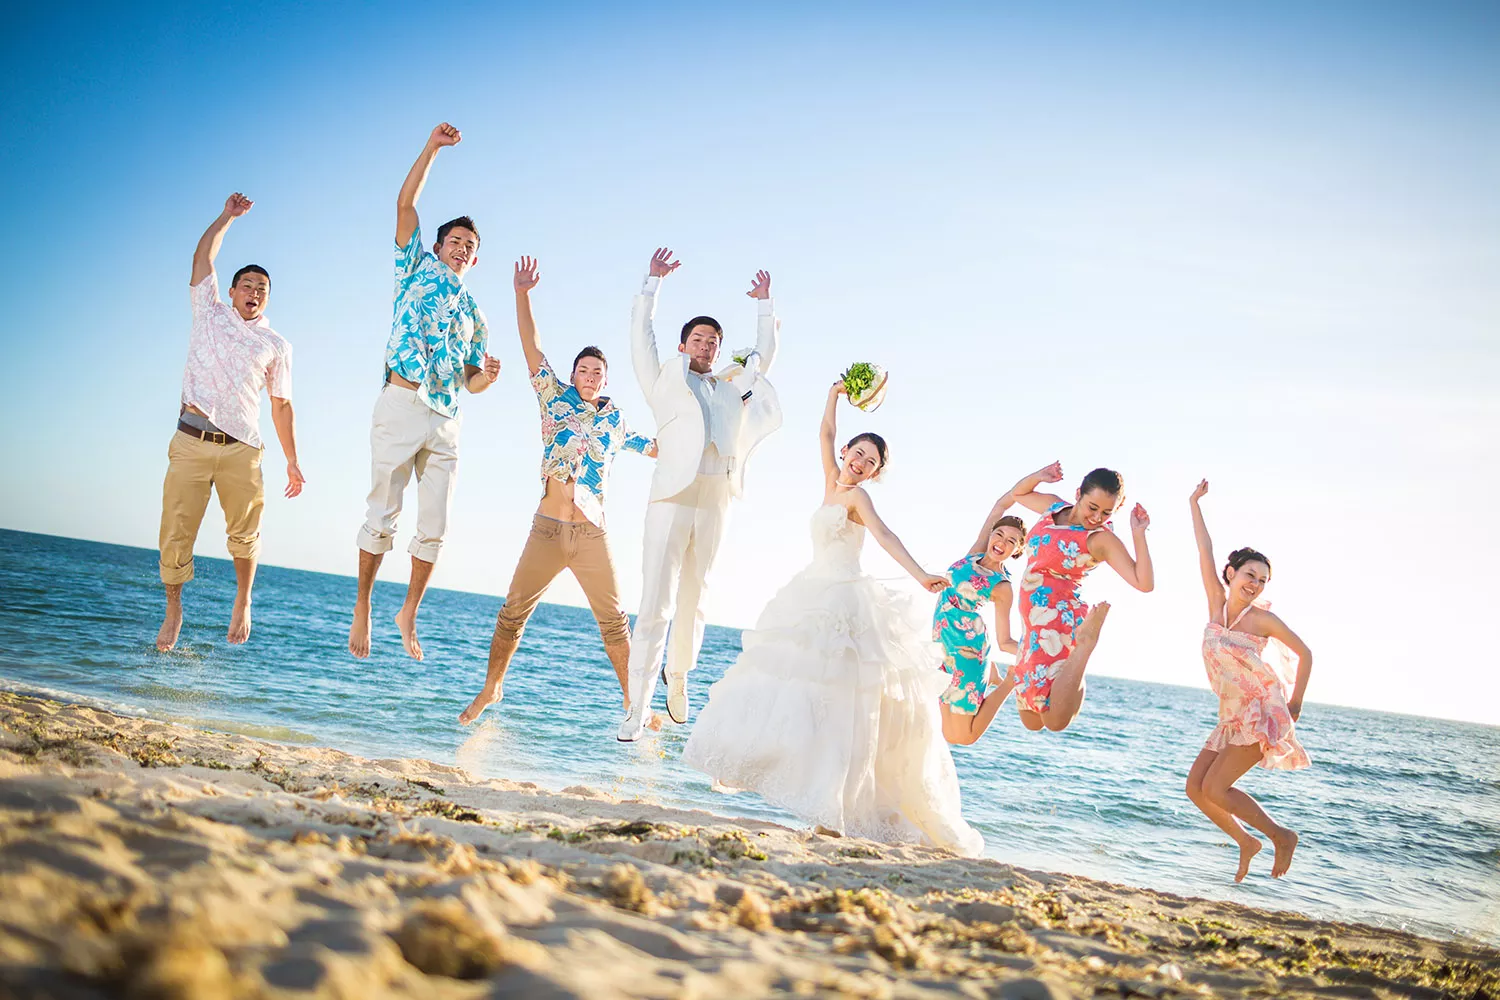 以碧海藍天為背景的沖繩婚禮十分浪漫。